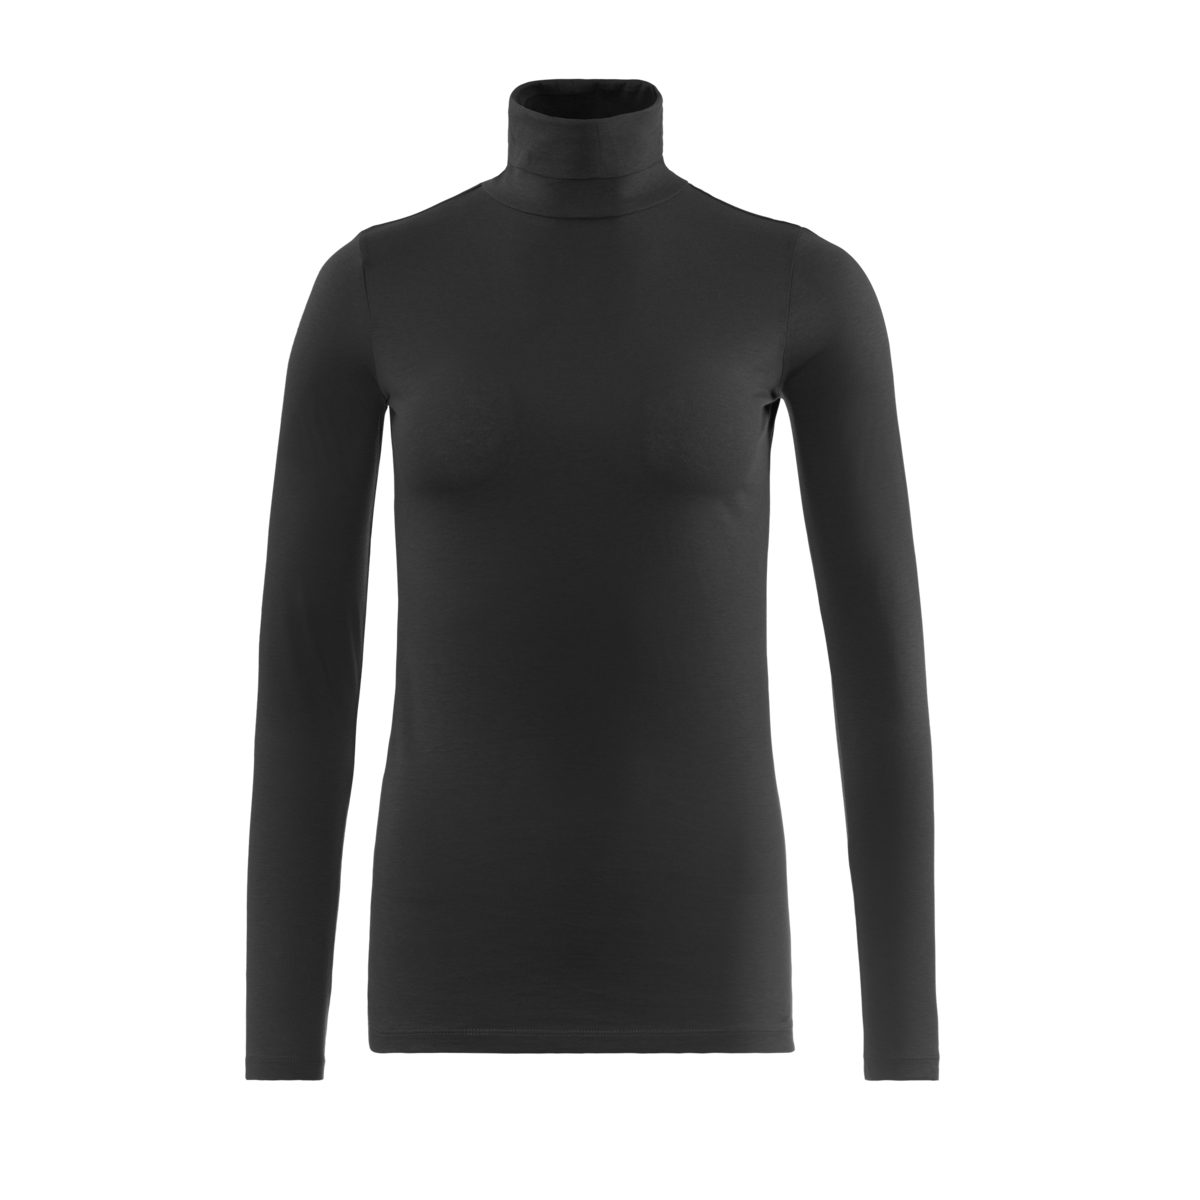 Langarm-Shirt LIVING Black angesagtem CRAFTS Feines Rollkragenshirt NIA mit Rollkragen